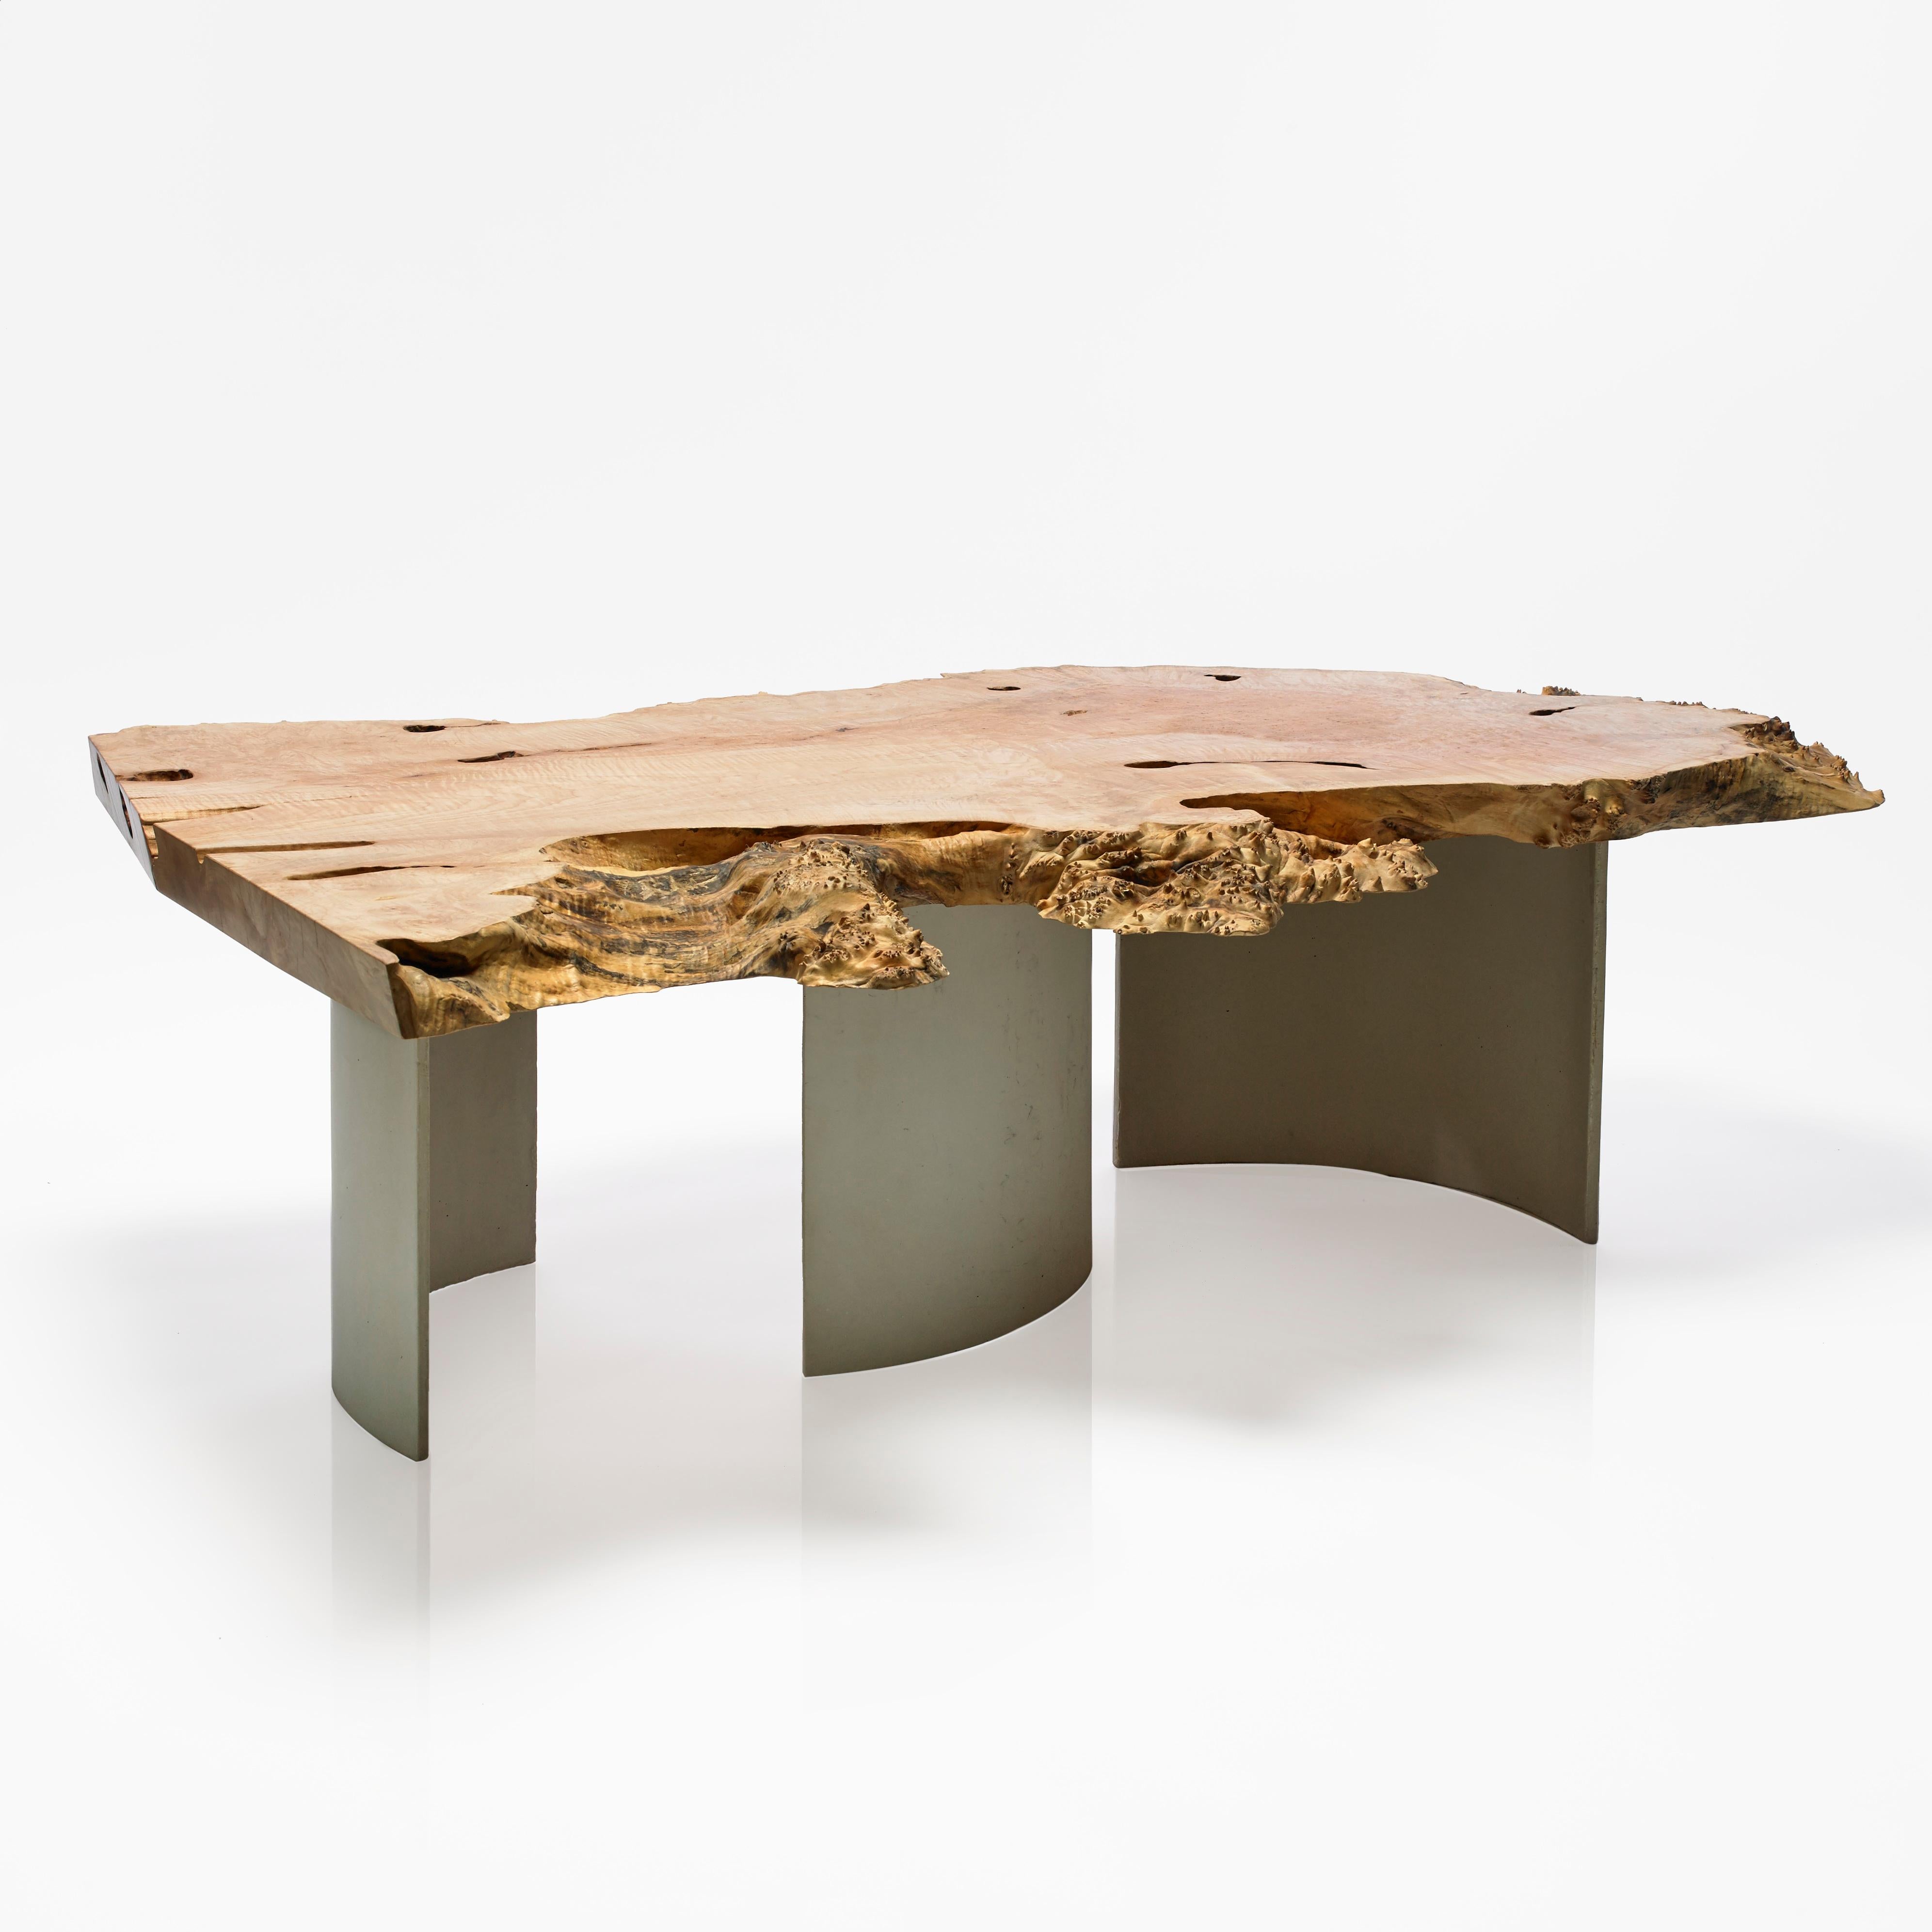 Une table basse moderne, sculpturale et naturelle qui vieillira avec élégance. Une pièce d'érable spalted posée sur trois pieds en béton incurvés, espacés pour suivre les courbes naturelles du plateau et du grain, en utilisant un béton haute